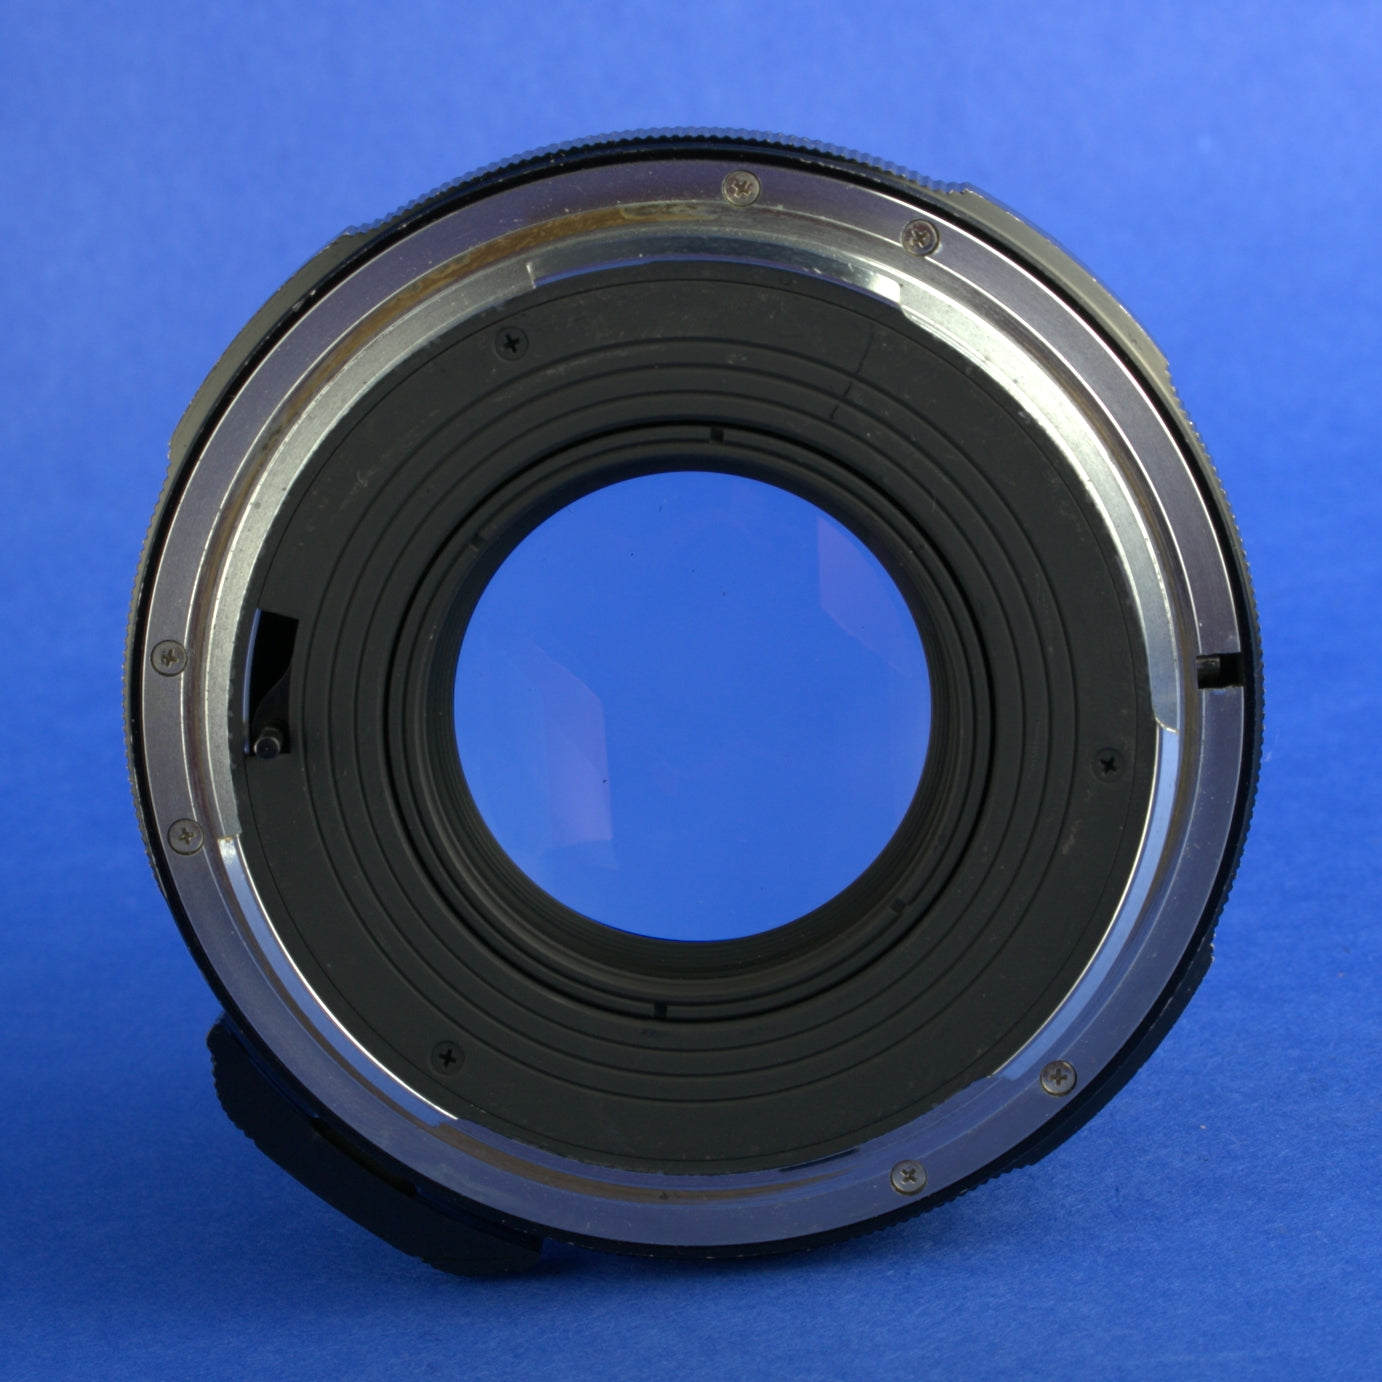 Pentax 6x7 105mm 2.4 Lens